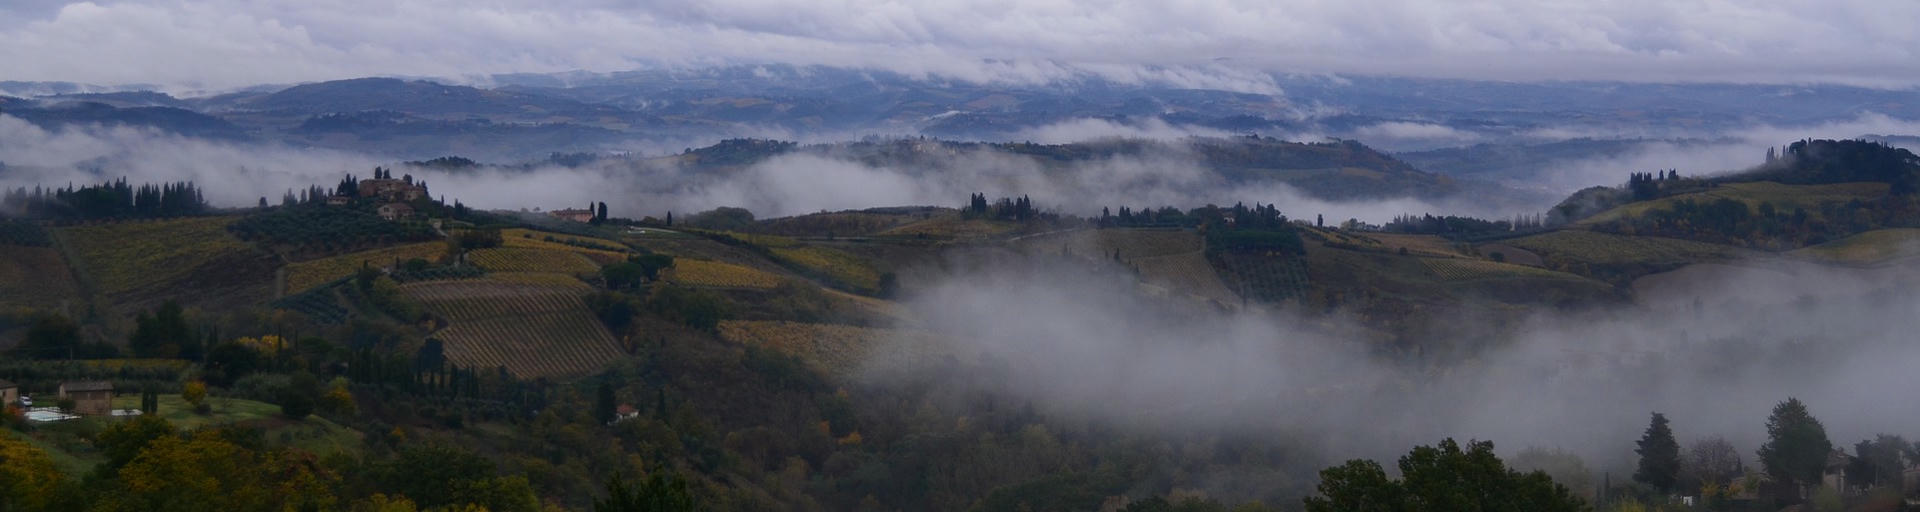 Wohnmobilurlaub Europa - Italien, Landschaft mit Wolken 